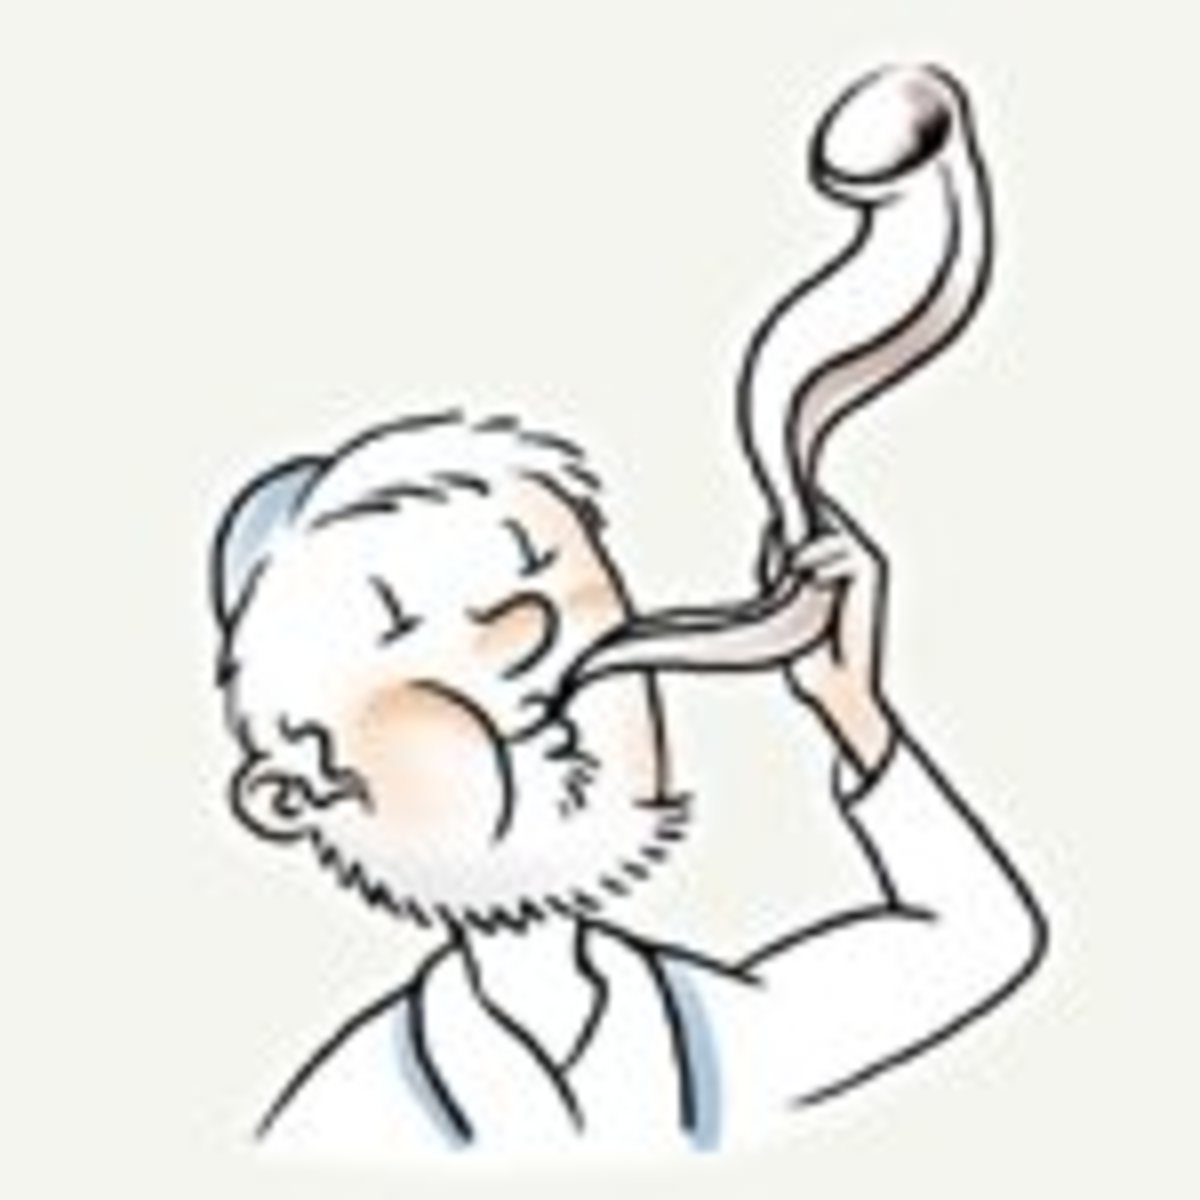 Man blowing shofar